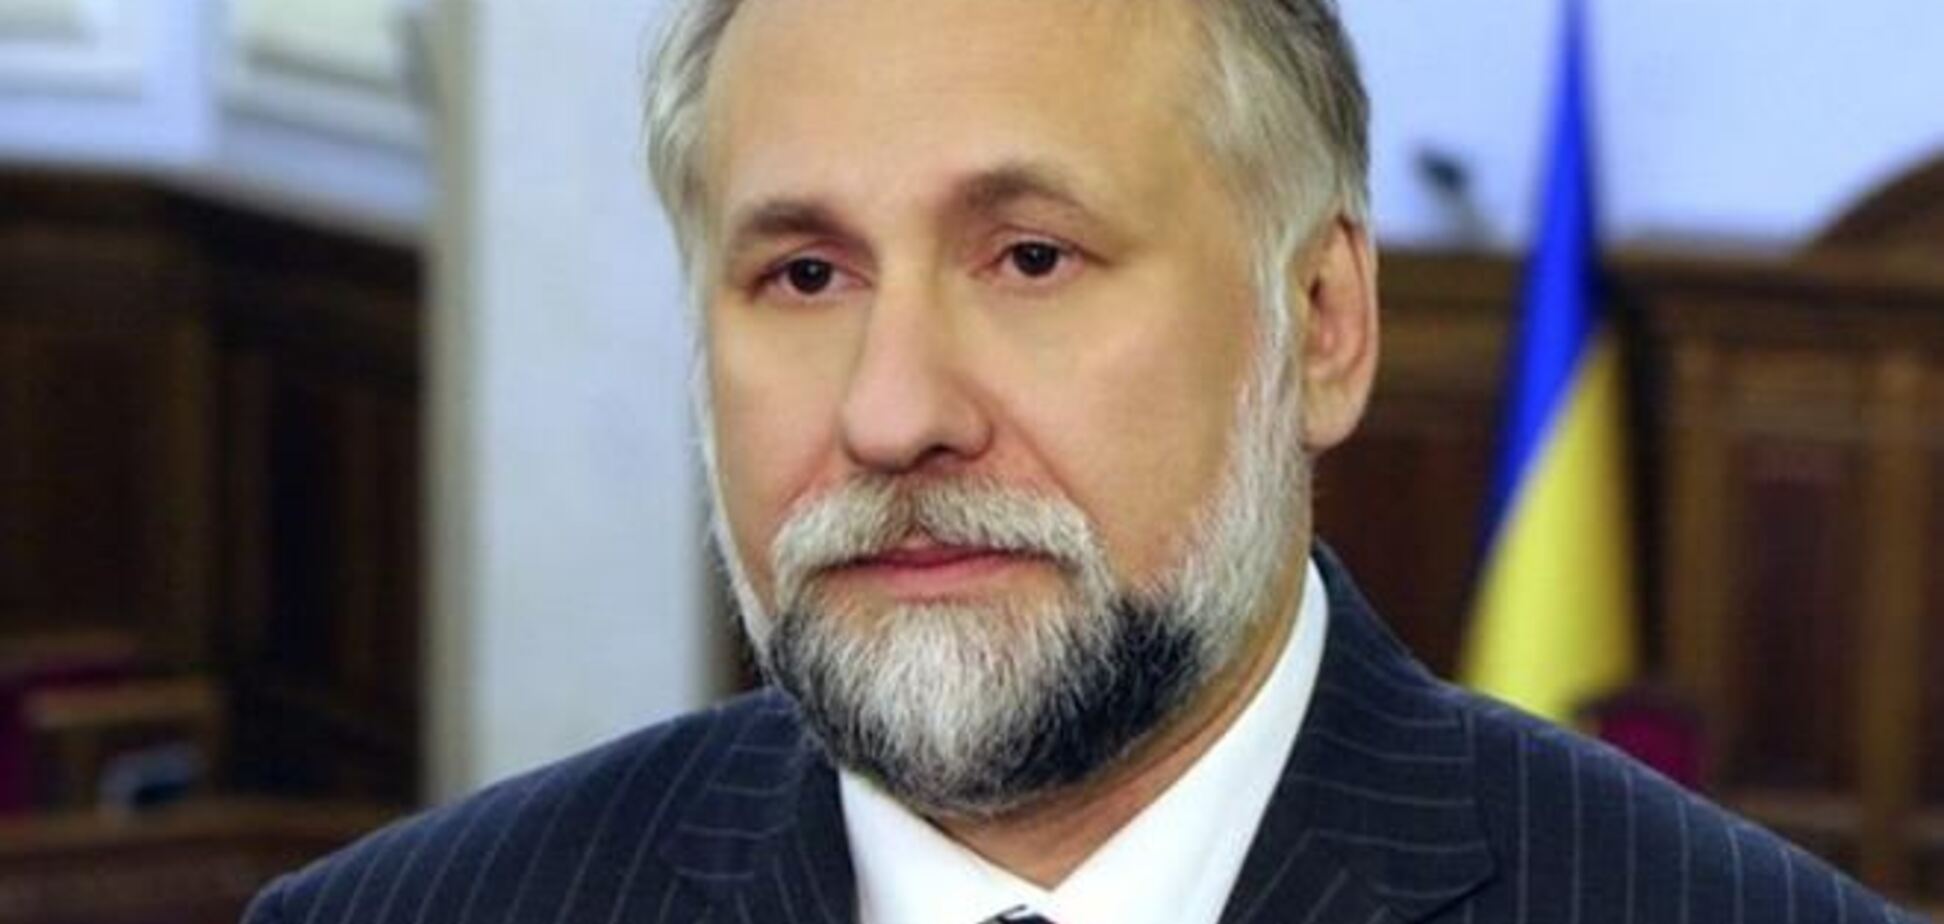 Тимошенко діє за планом: голодування, лікарі 'Шаріте', єврокомісари, виїзд за кордон - Кармазін